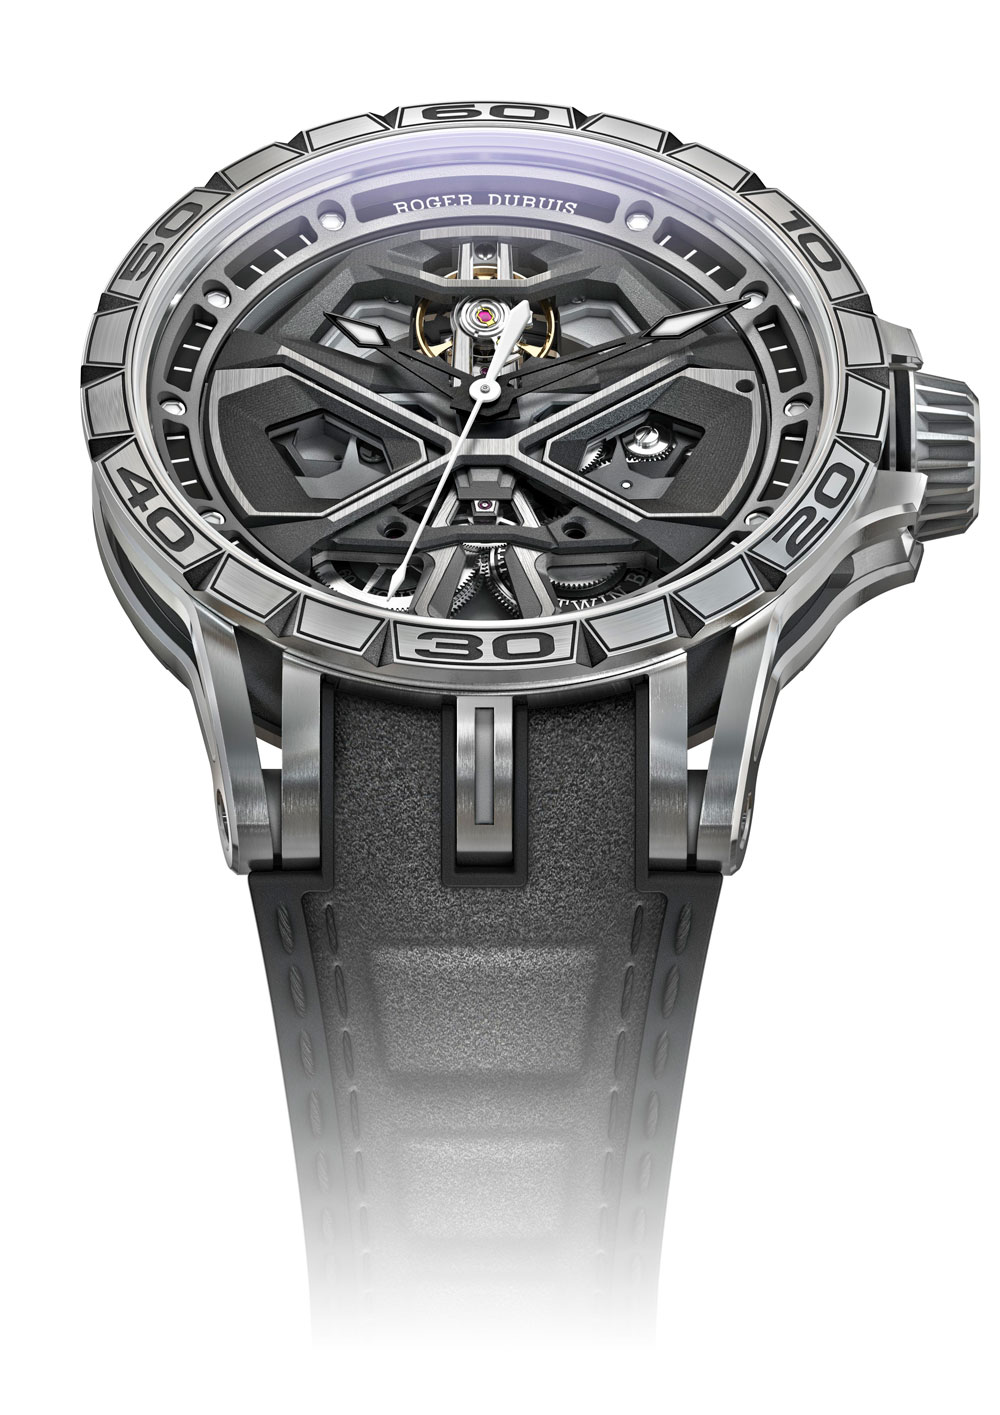 Reloj Roger Dubuis Excalibur Huracán en colaboración con Lamborghini